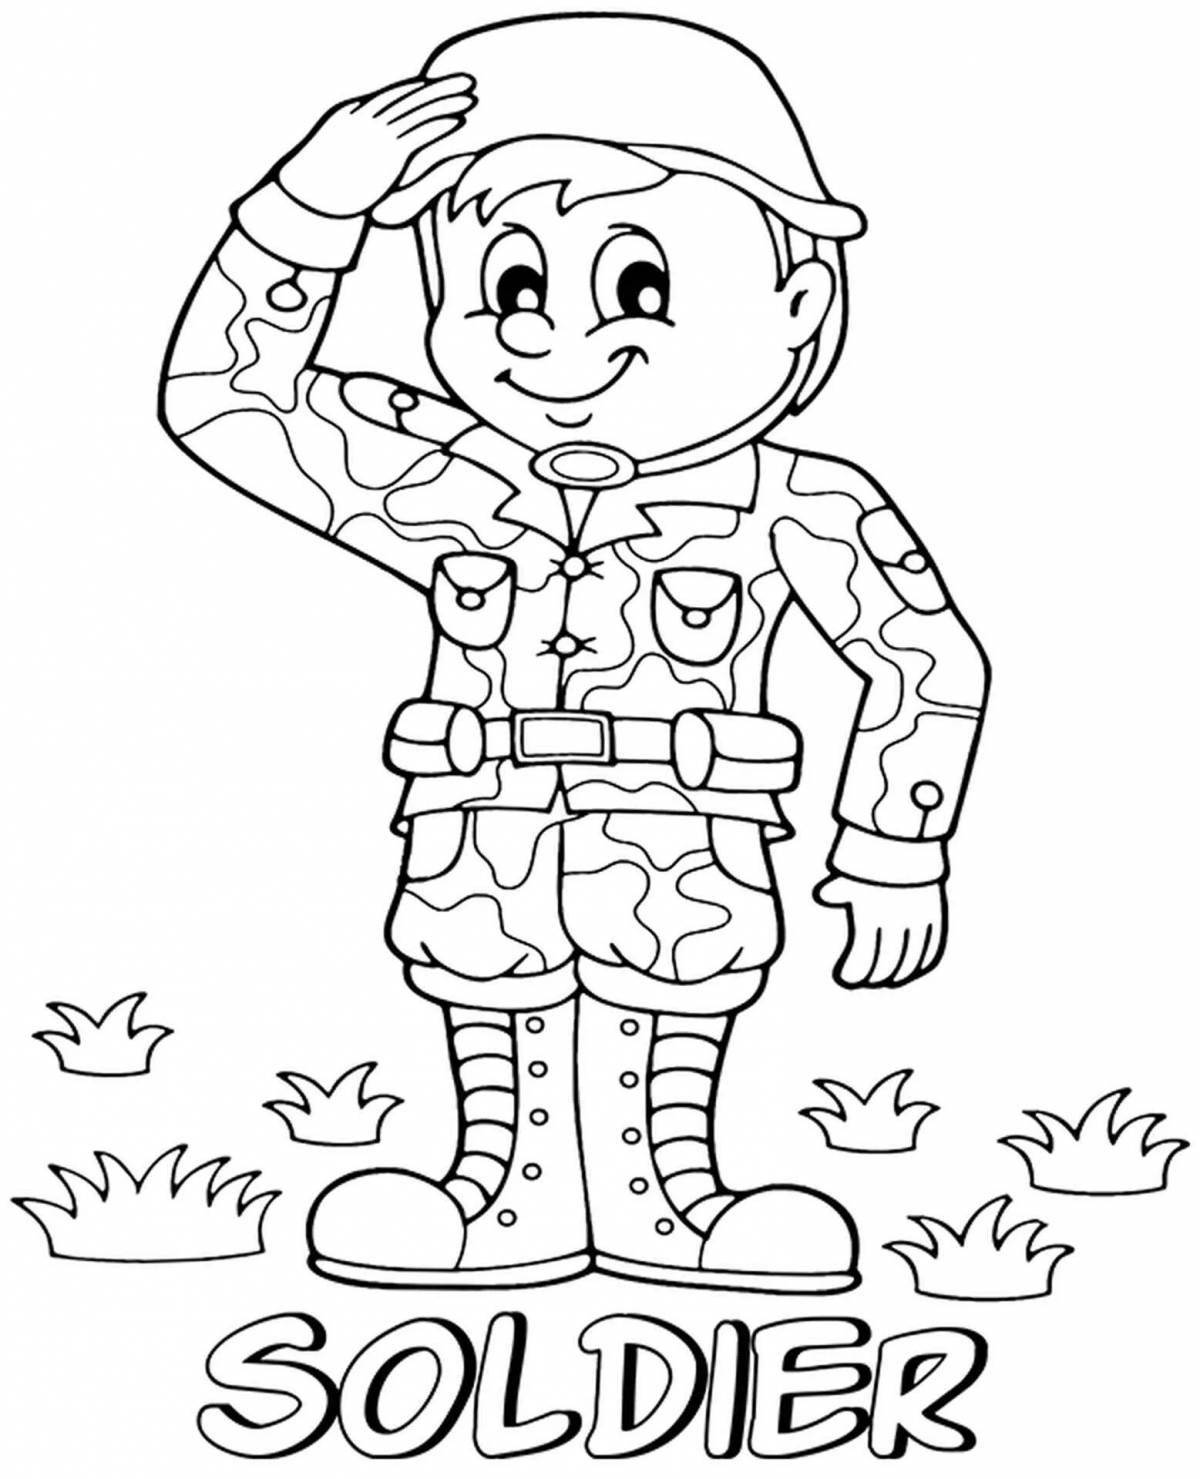 Увлекательная раскраска для детей про военную профессию